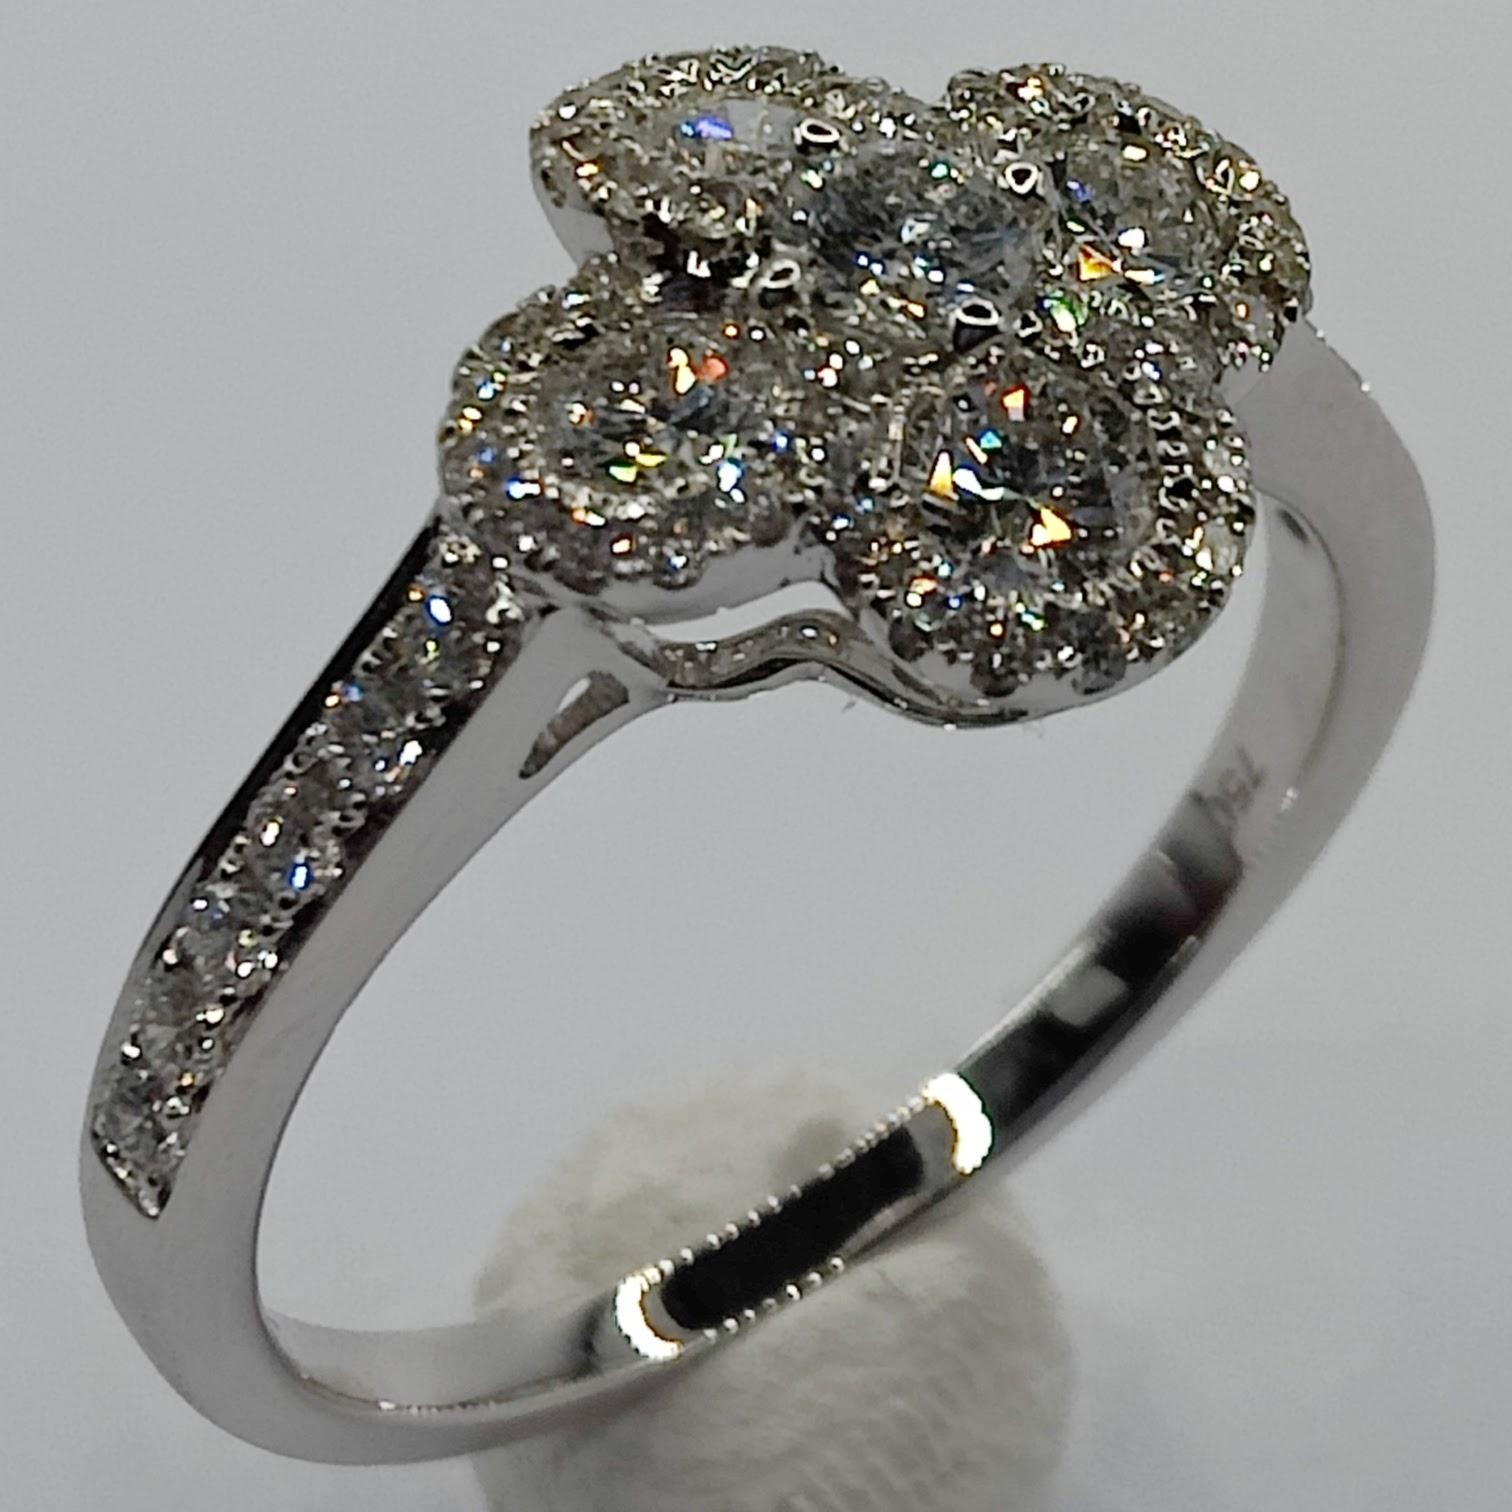 Dieser atemberaubende Diamantring ist die perfekte Wahl, um Ihrem Look einen Hauch von Glück und Laune zu verleihen. Der Ring zeichnet sich durch ein wunderschönes vierblättriges Kleeblatt aus, das mit Diamanten besetzt ist, was ihn zu einem